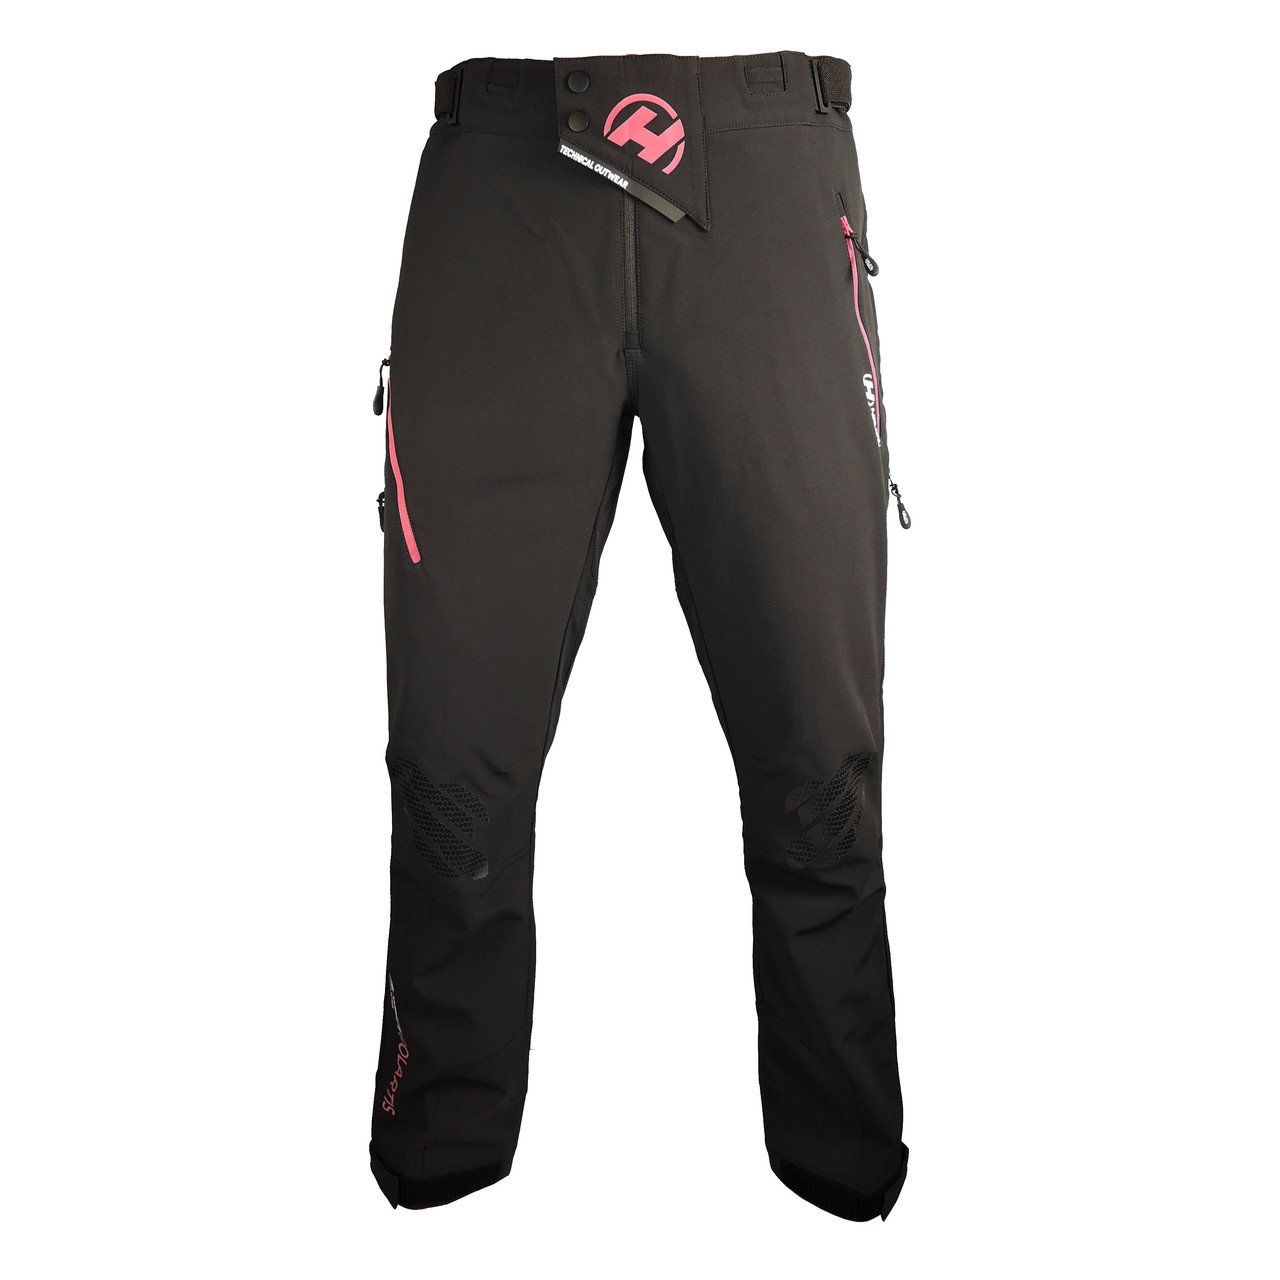 Kalhoty pánské Haven Polartis - černé-růžové, XL